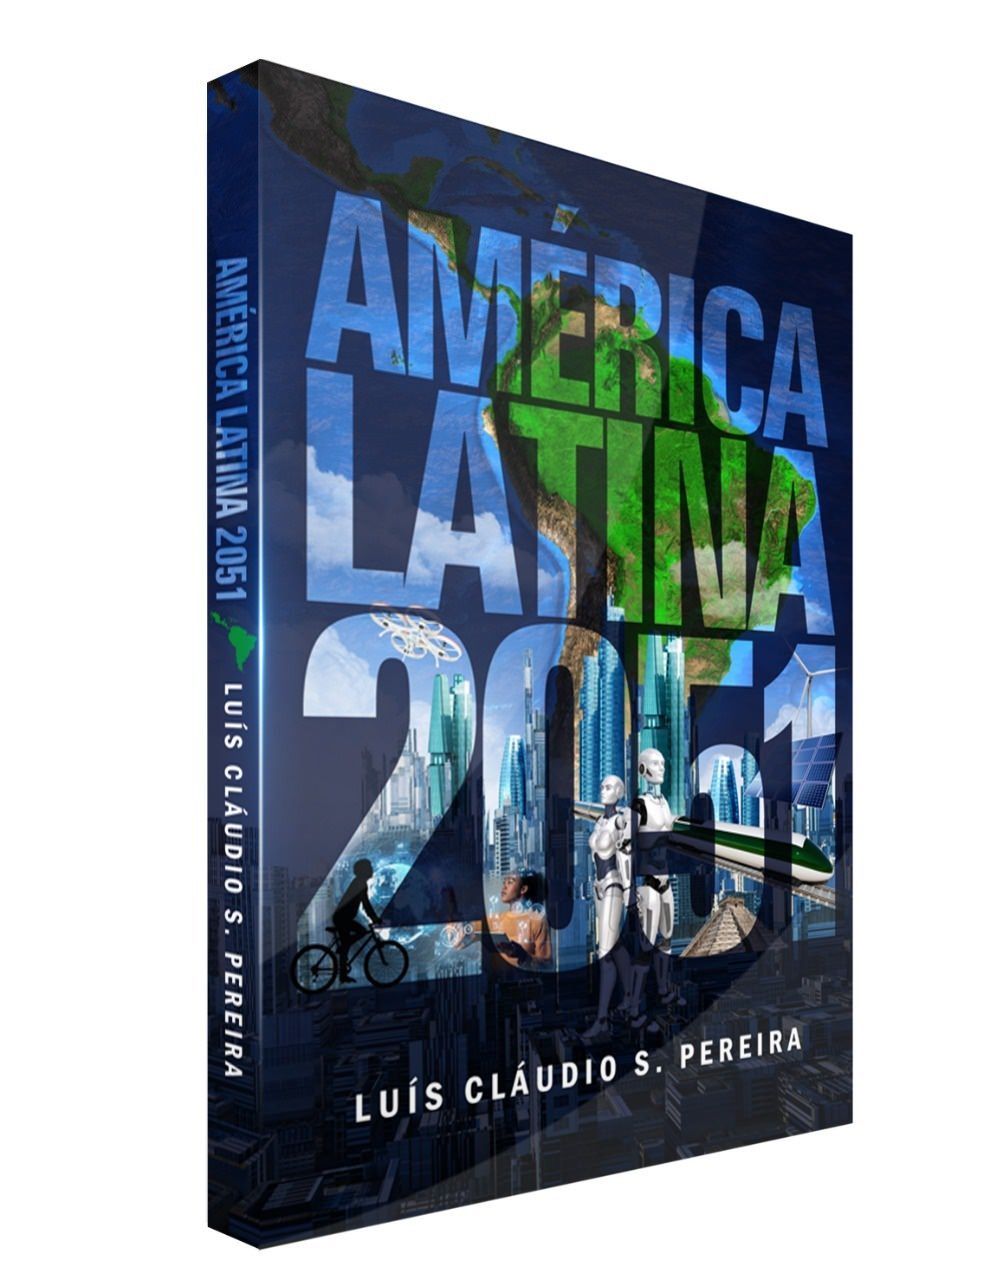 Libro "America Latina 2051" di Luís Cláudio S. Pear, copertura. Rivelazione.